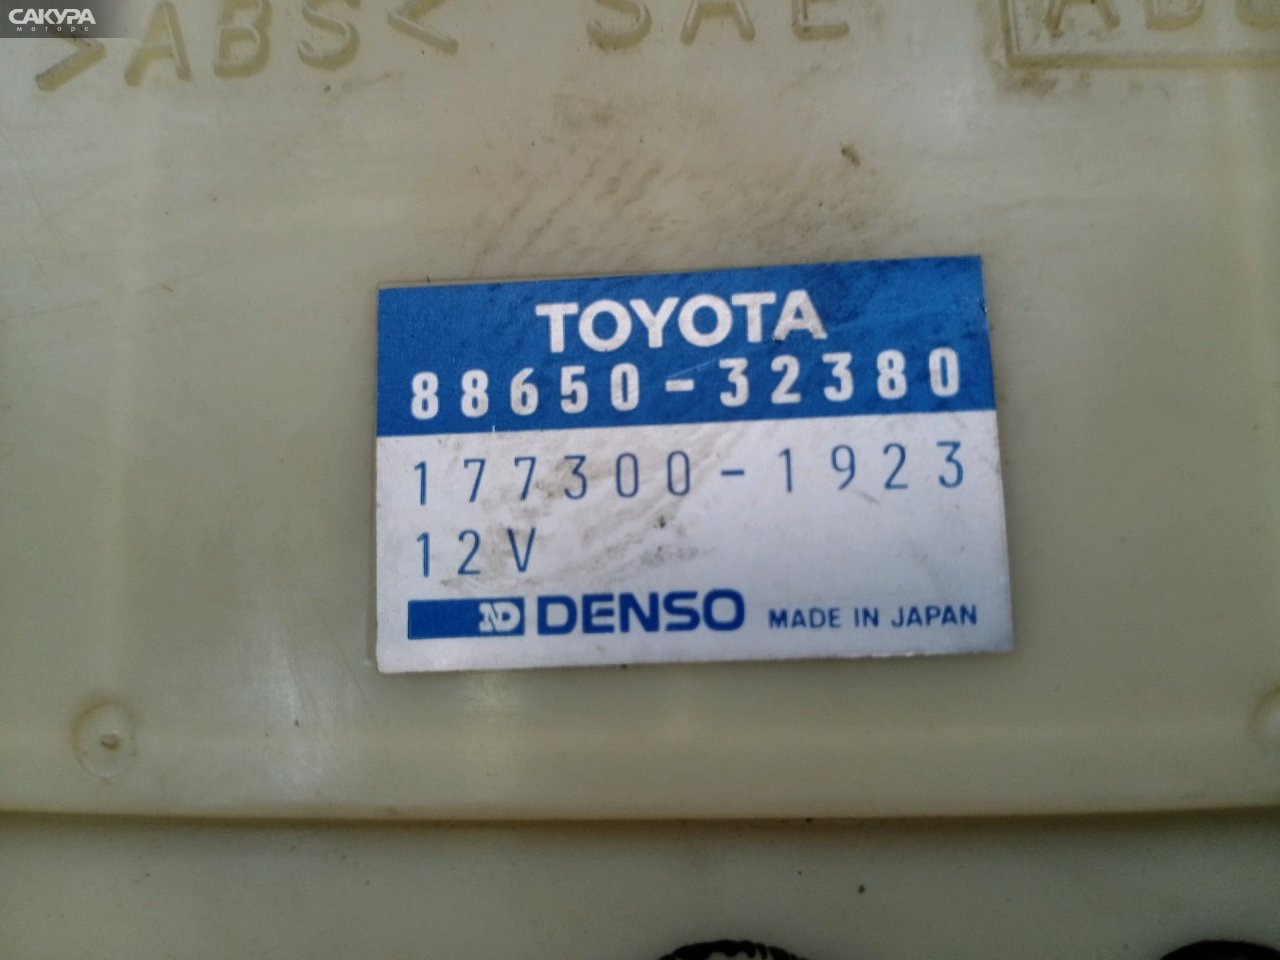 Блок управления ДВС Toyota Camry SV43 3S-FE: купить в Сакура Красноярск.